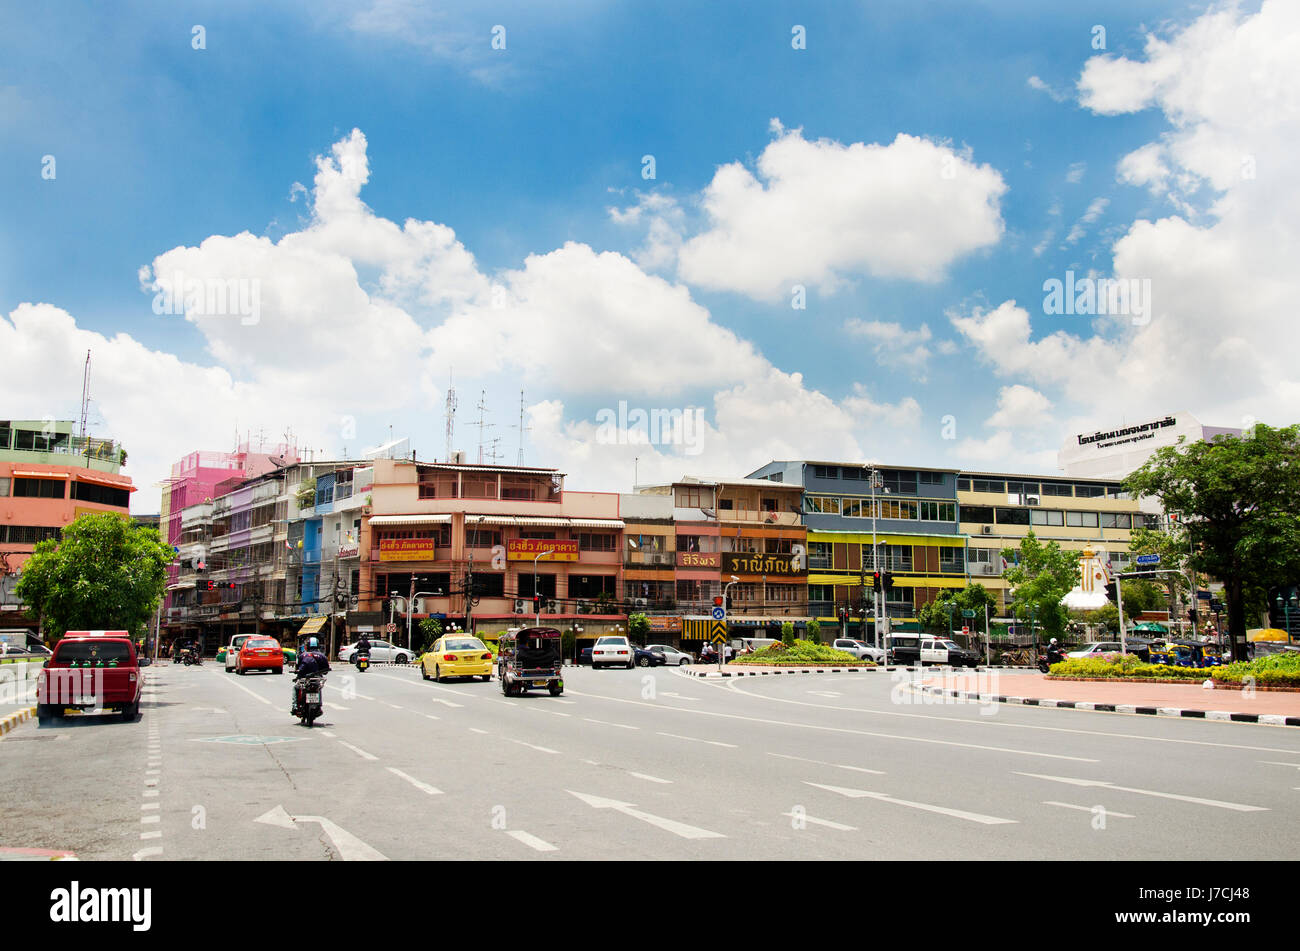 El pueblo tailandés y cabalgando sobre conducción Bamrung Mueang Road, cerca de columpio gigante o Sao Chingcha y Wat Suthat Thepphaararam con vial el 11 de mayo, 2017 Foto de stock